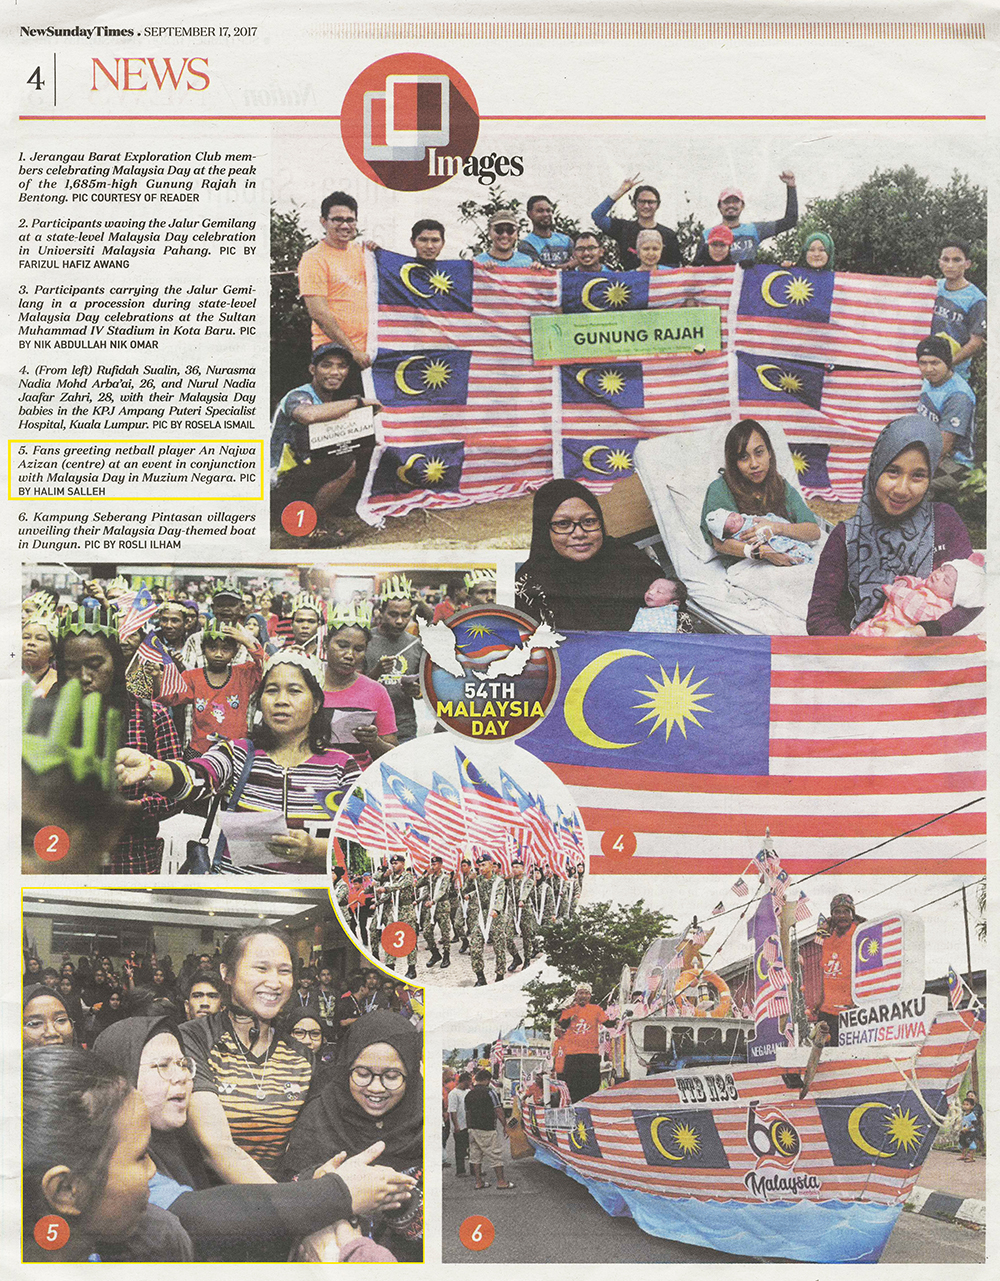 54th Malaysia Day